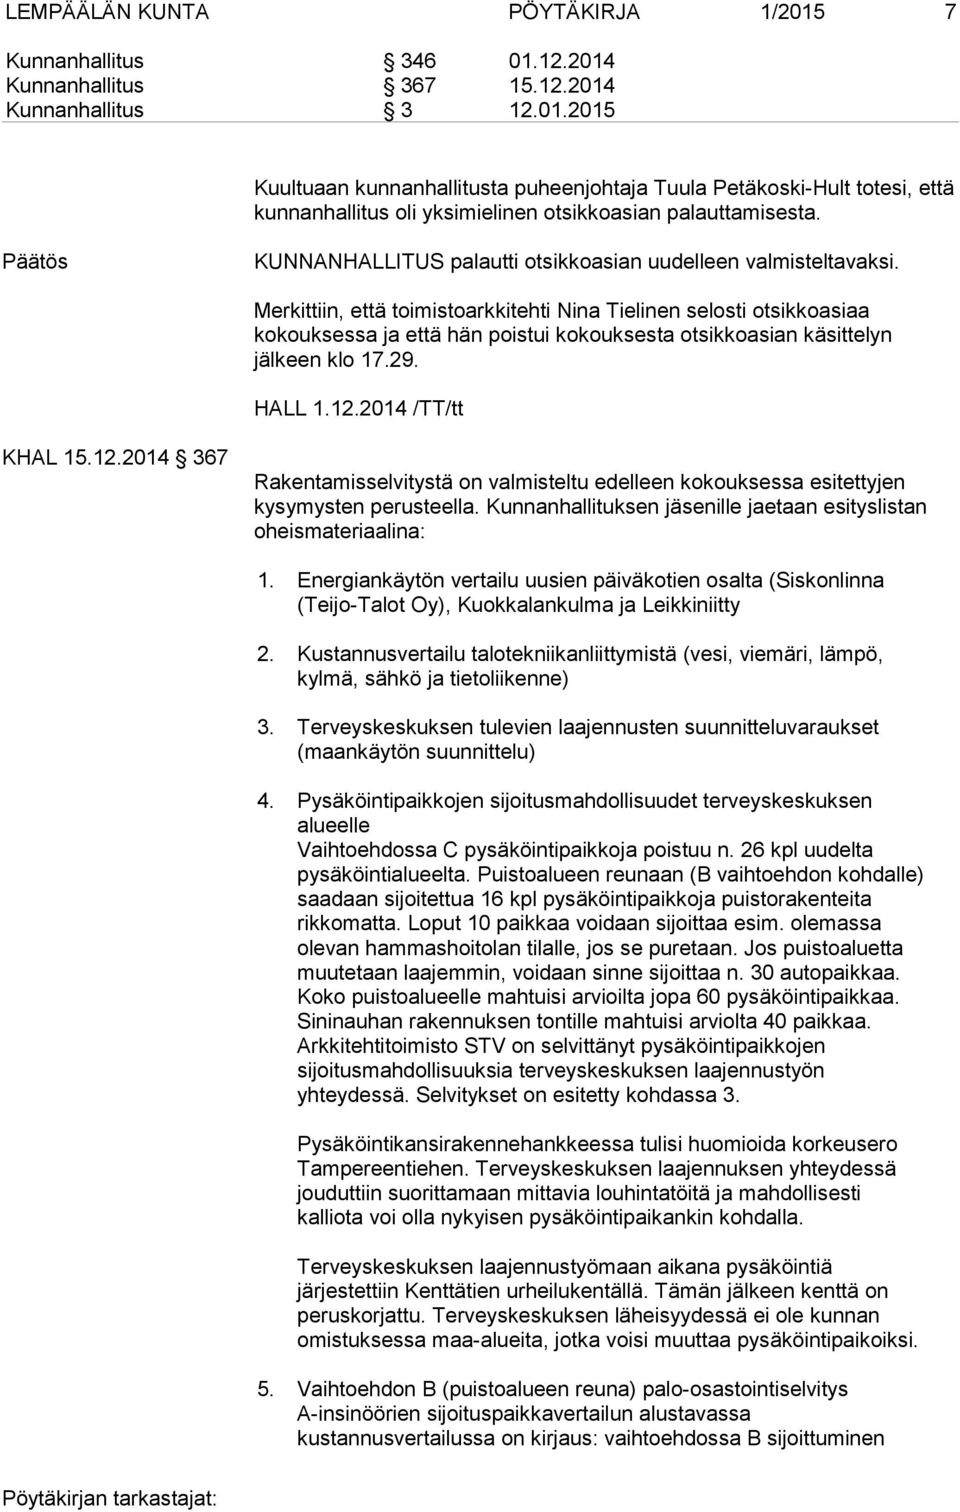 Merkittiin, että toimistoarkkitehti Nina Tielinen selosti otsikkoasiaa kokouksessa ja että hän poistui kokouksesta otsikkoasian käsittelyn jälkeen klo 17.29. HALL 1.12.